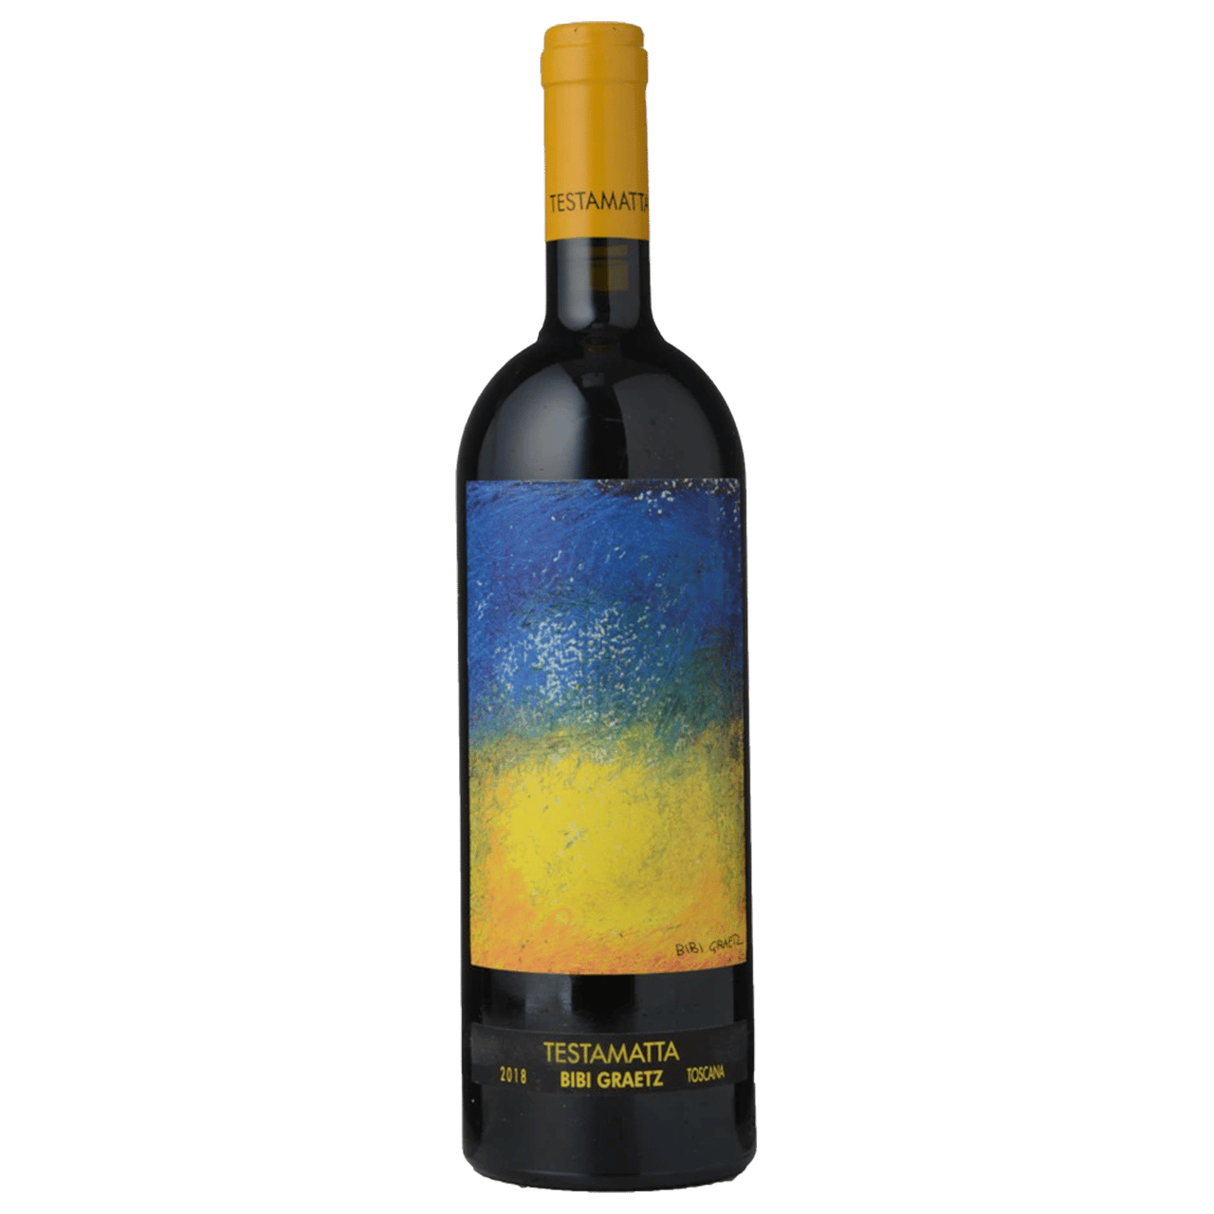 Bibi Graetz Testamatta Toscana 2018 (Single Bottle) 750ml